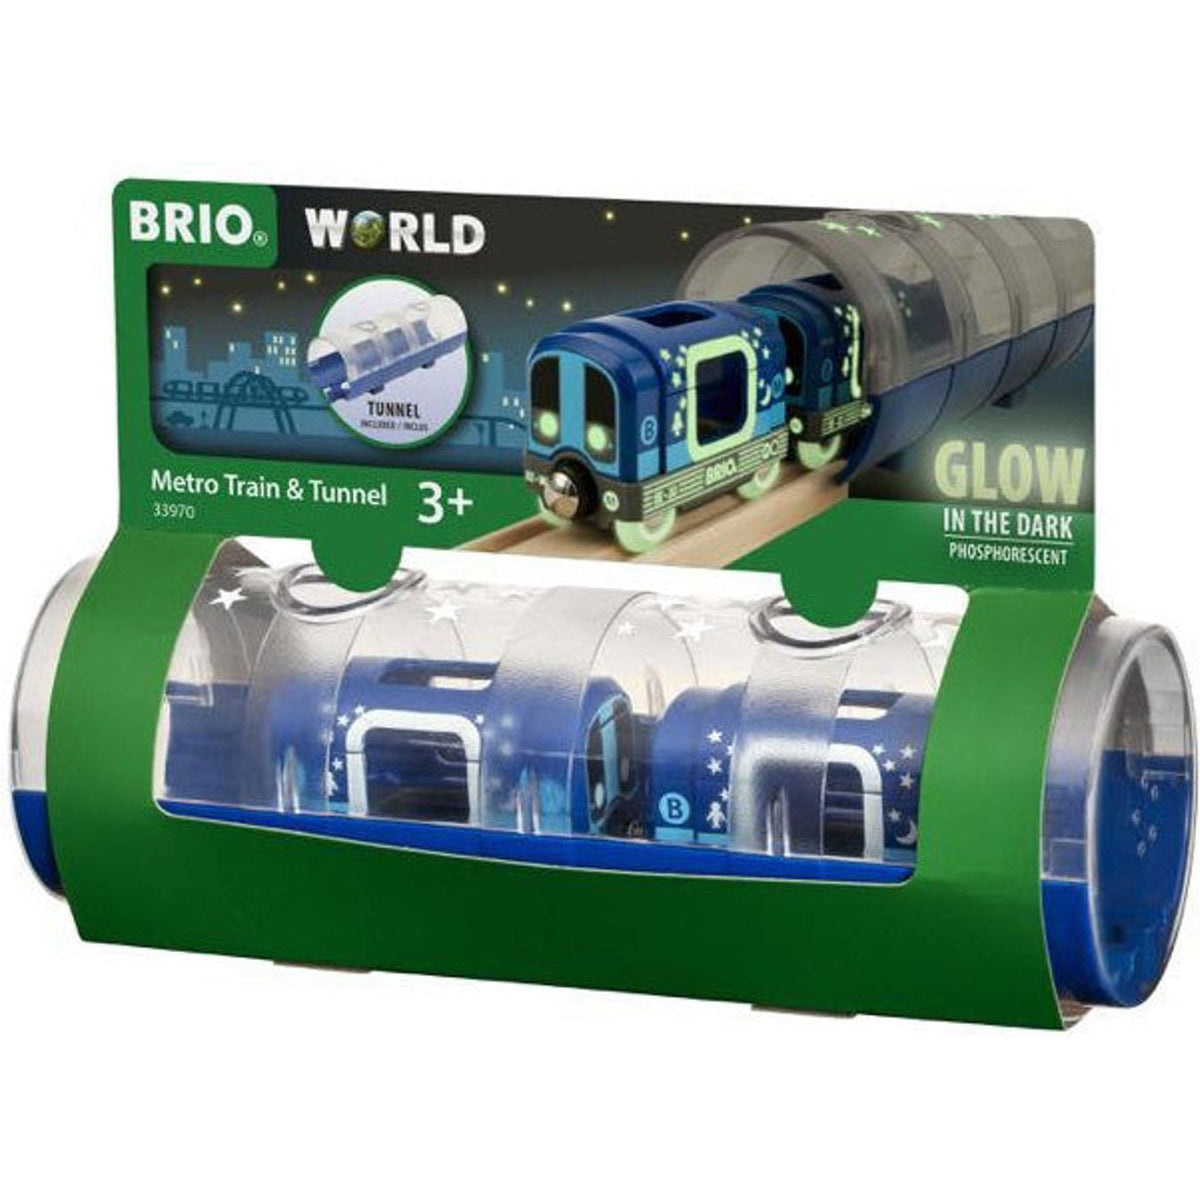 BRIO Train - Metro Train & Tunnel 3 pieces - Toybox Tales